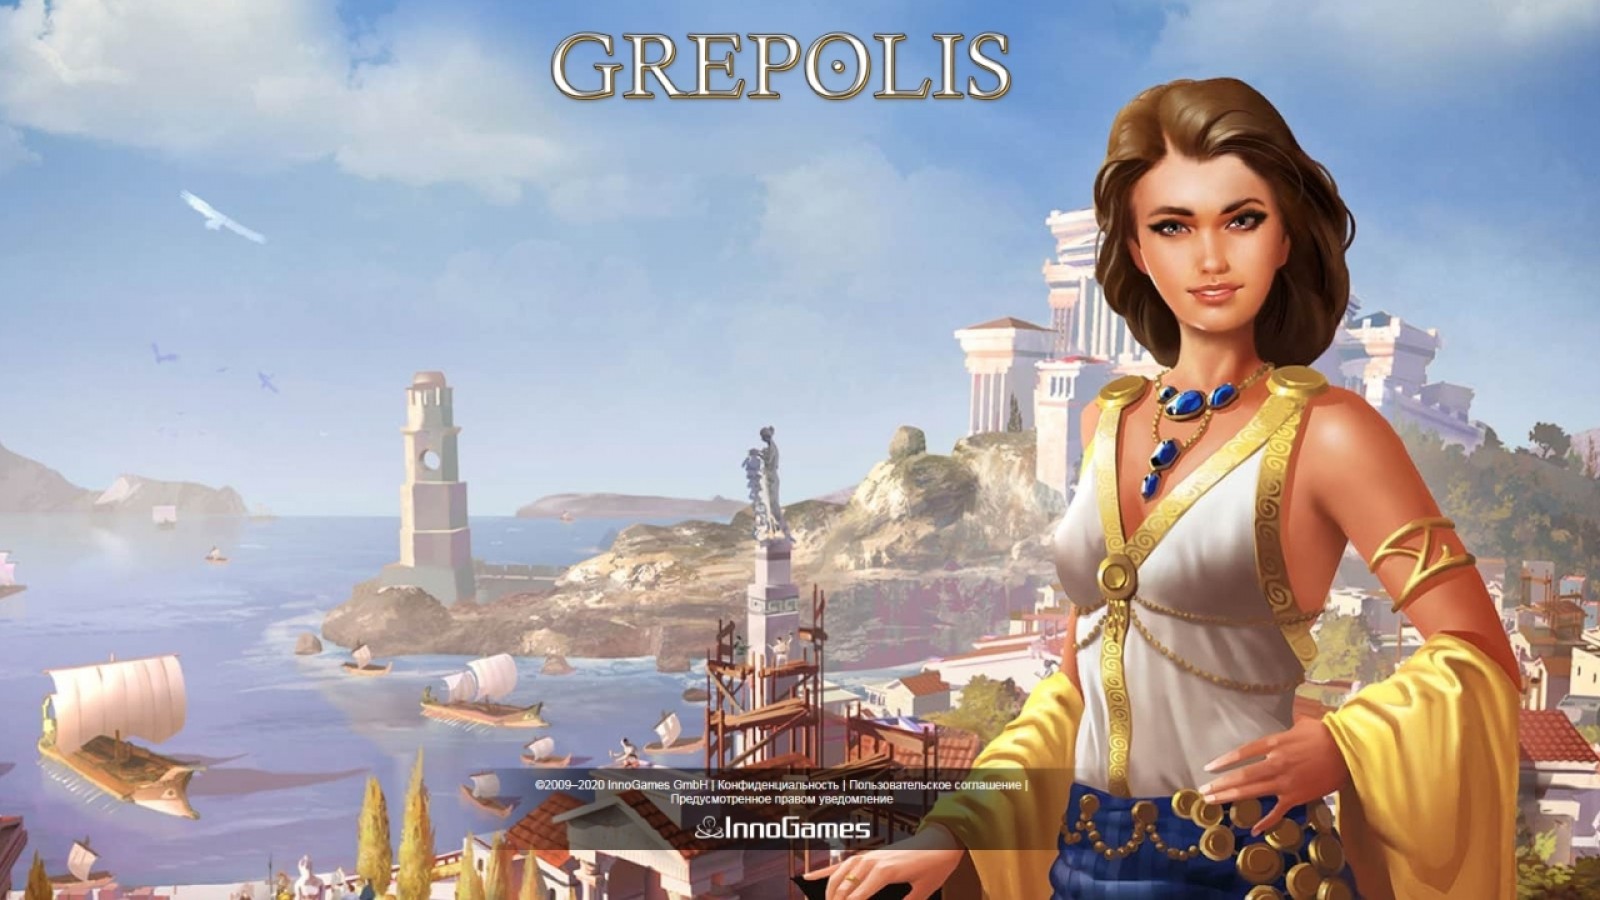 играть онлайн бесплатно grepolis браузерную игру по античным мотивам.